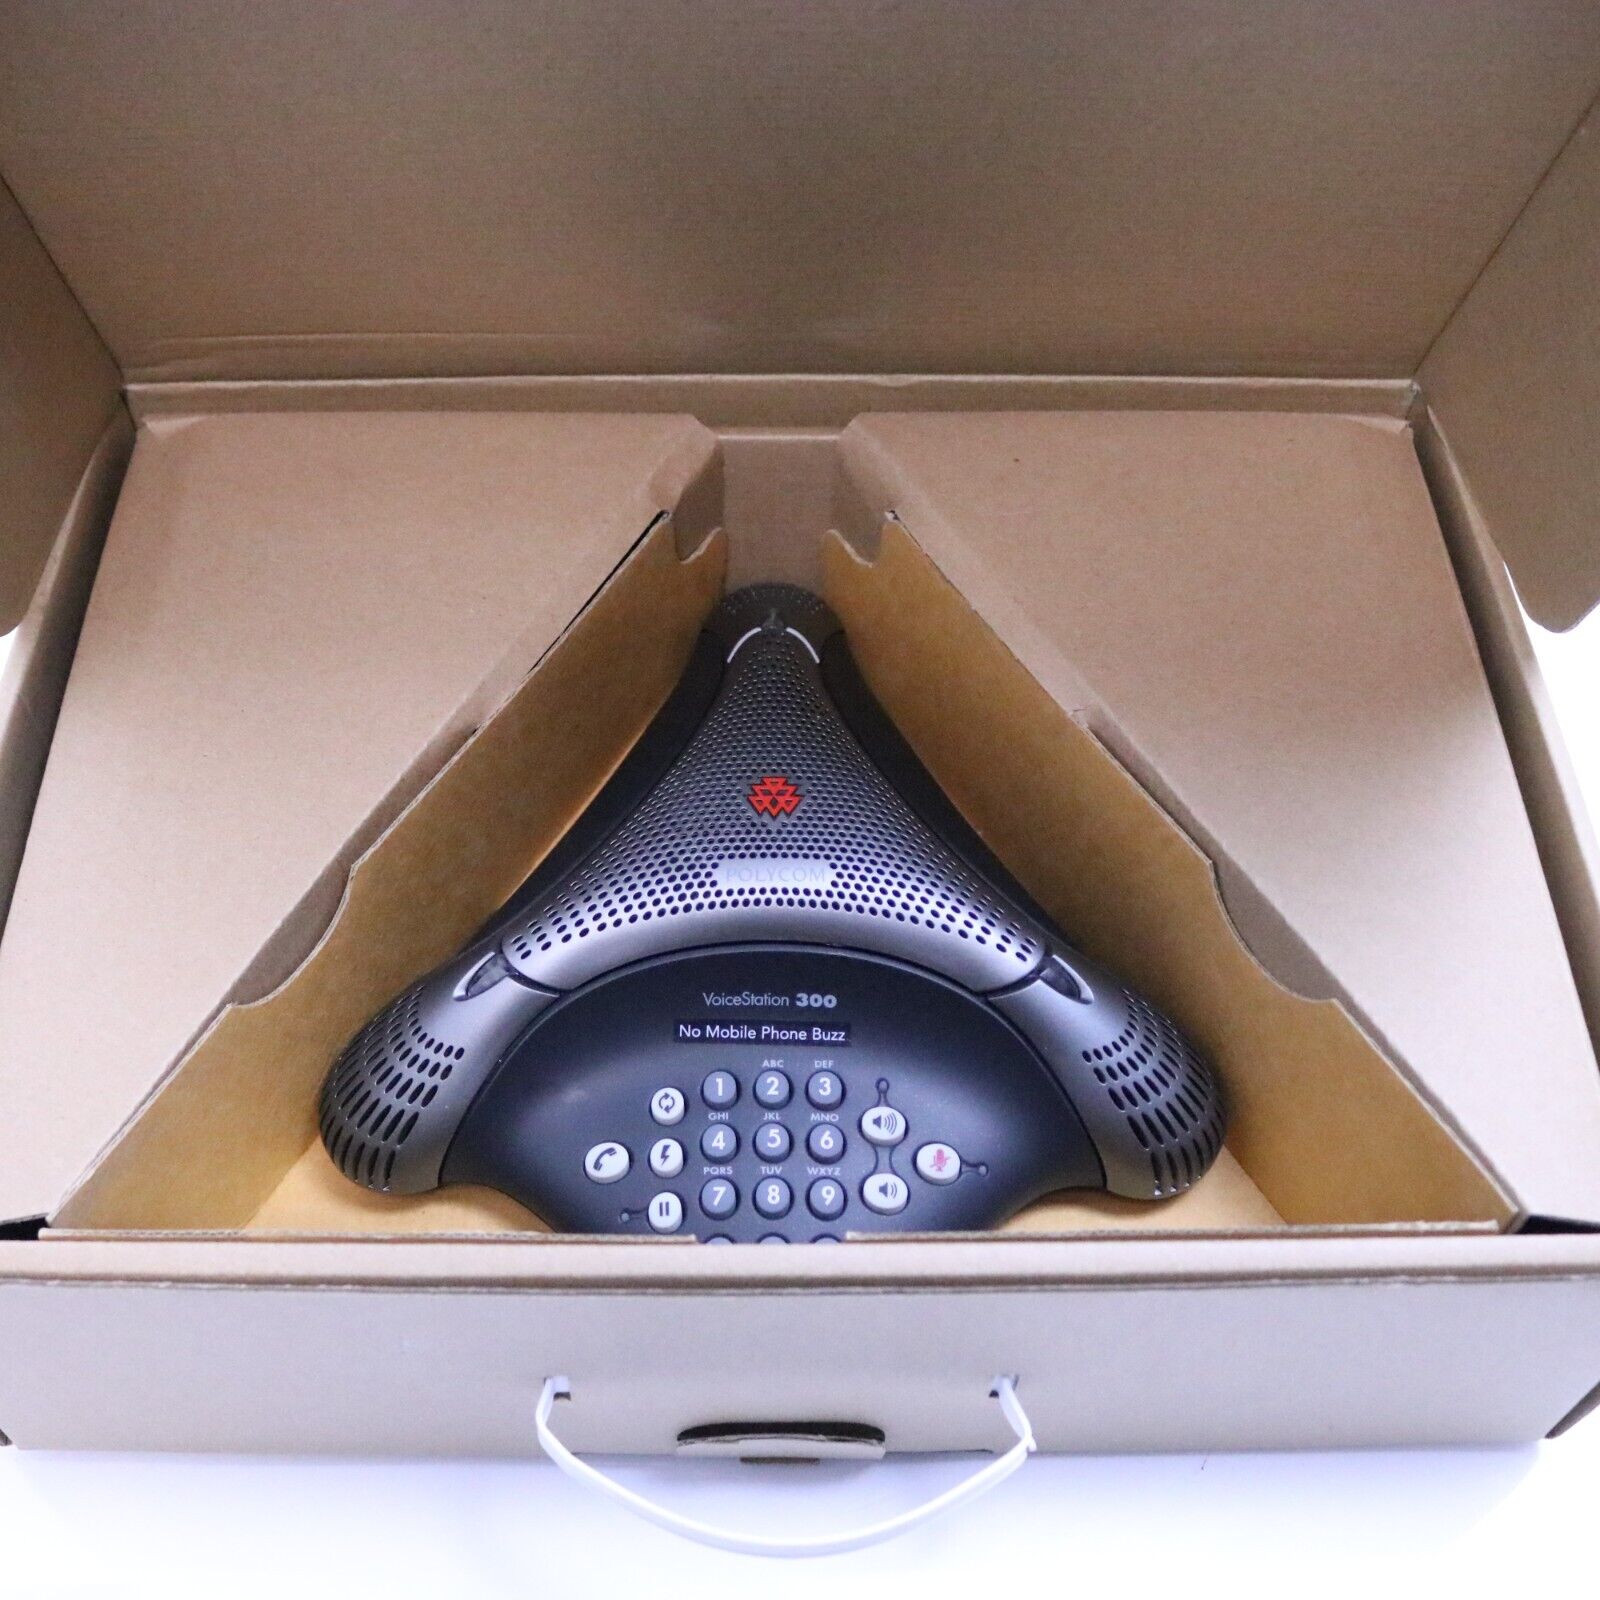 Polycom VoiceStation 300 Conference Phone VS300 2200-17910-001